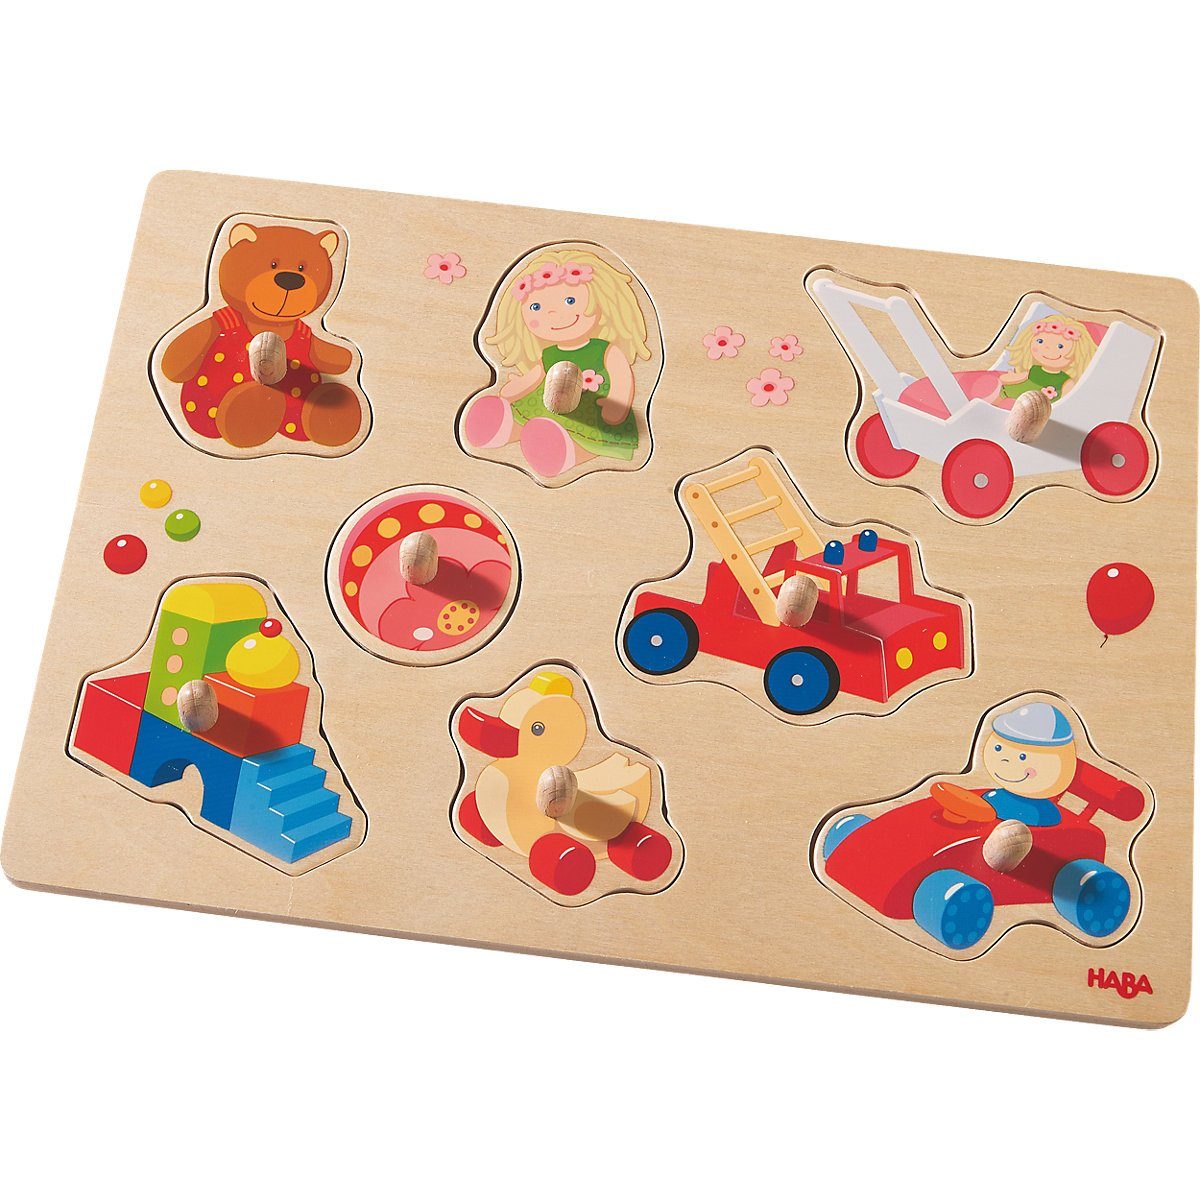 Haba Steckpuzzle »HABA 301963 Greifpuzzle Meine ersten Spielzeuge«,  Puzzleteile online kaufen | OTTO